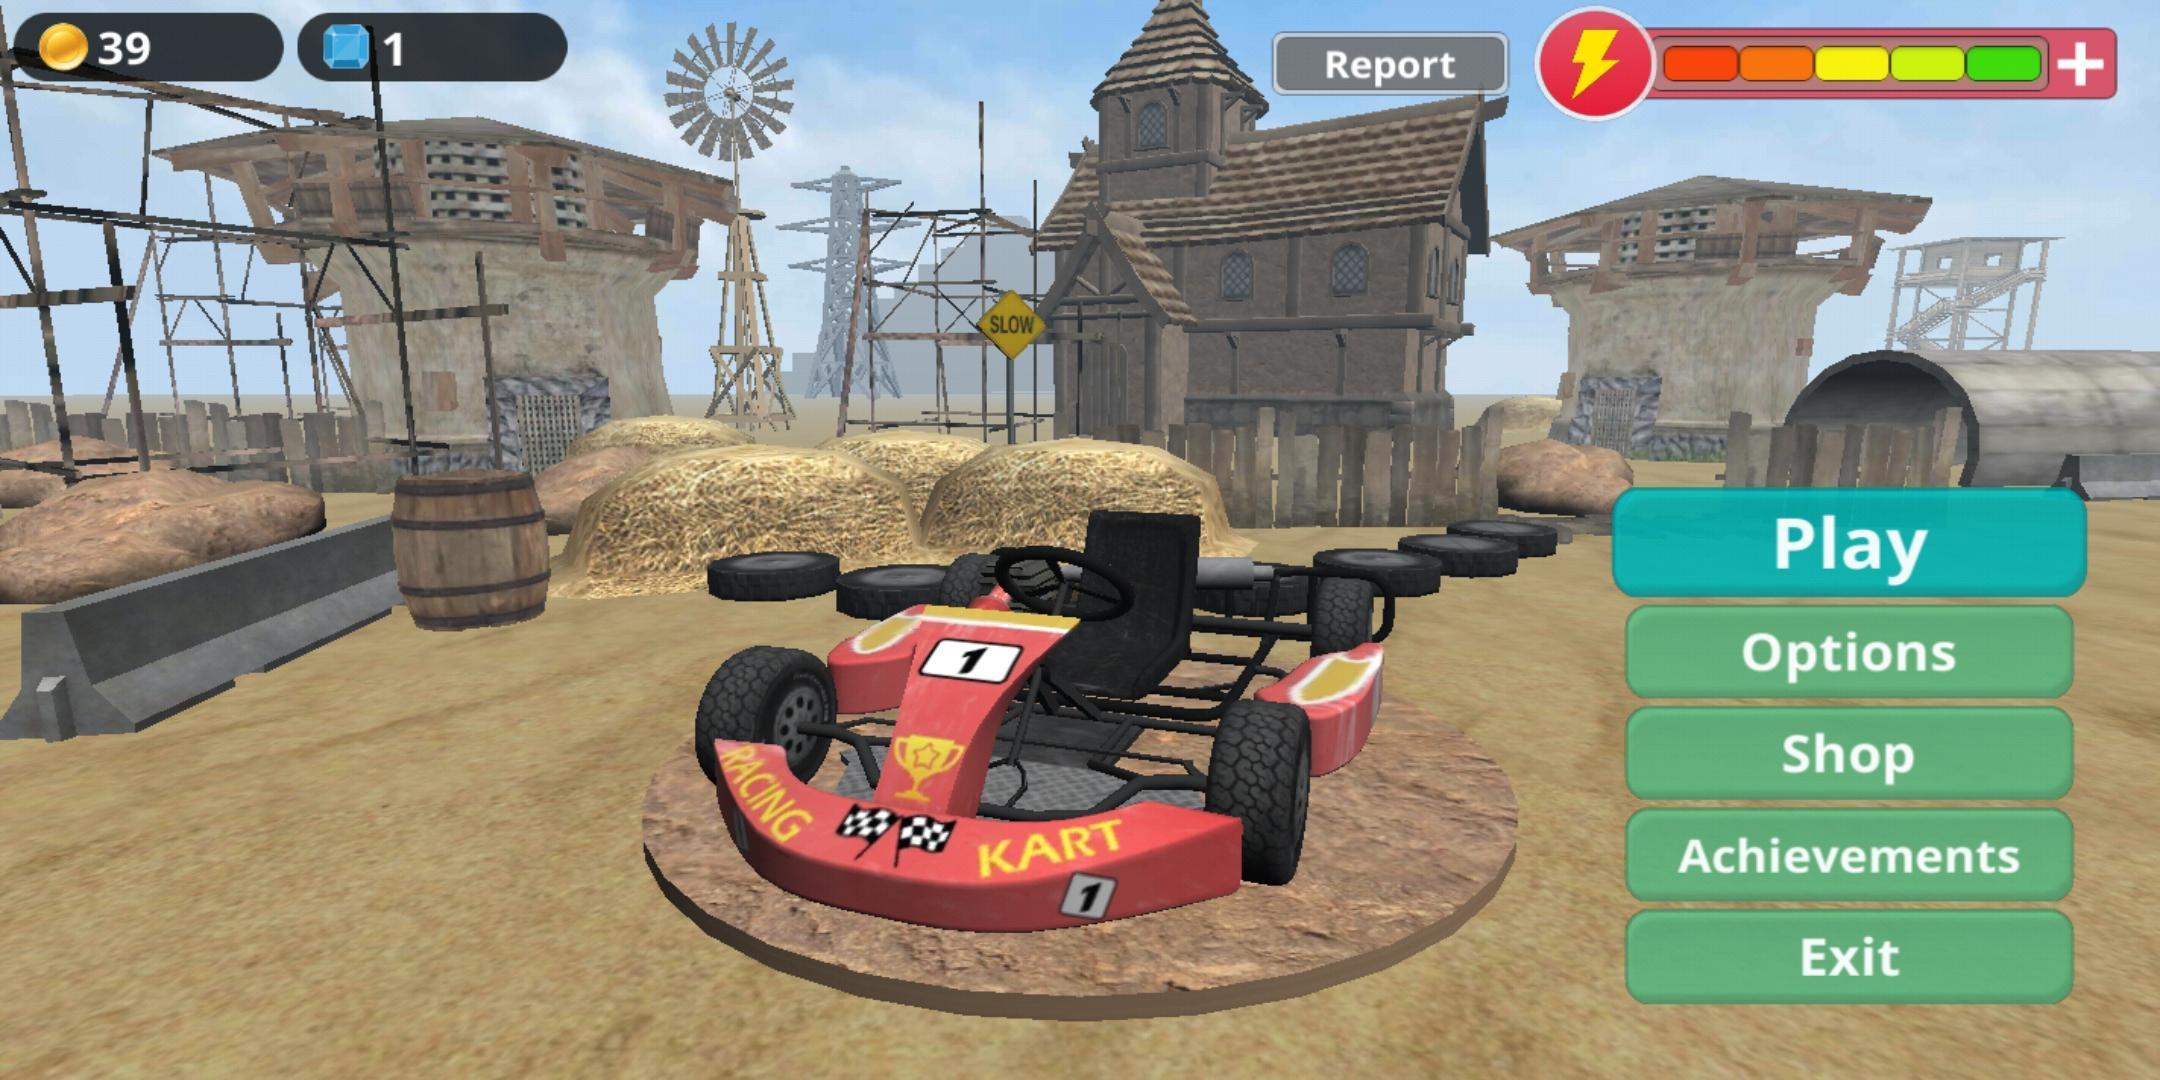 Racing Kart 3D – conquer the desert 1.7.6 Screenshot 1